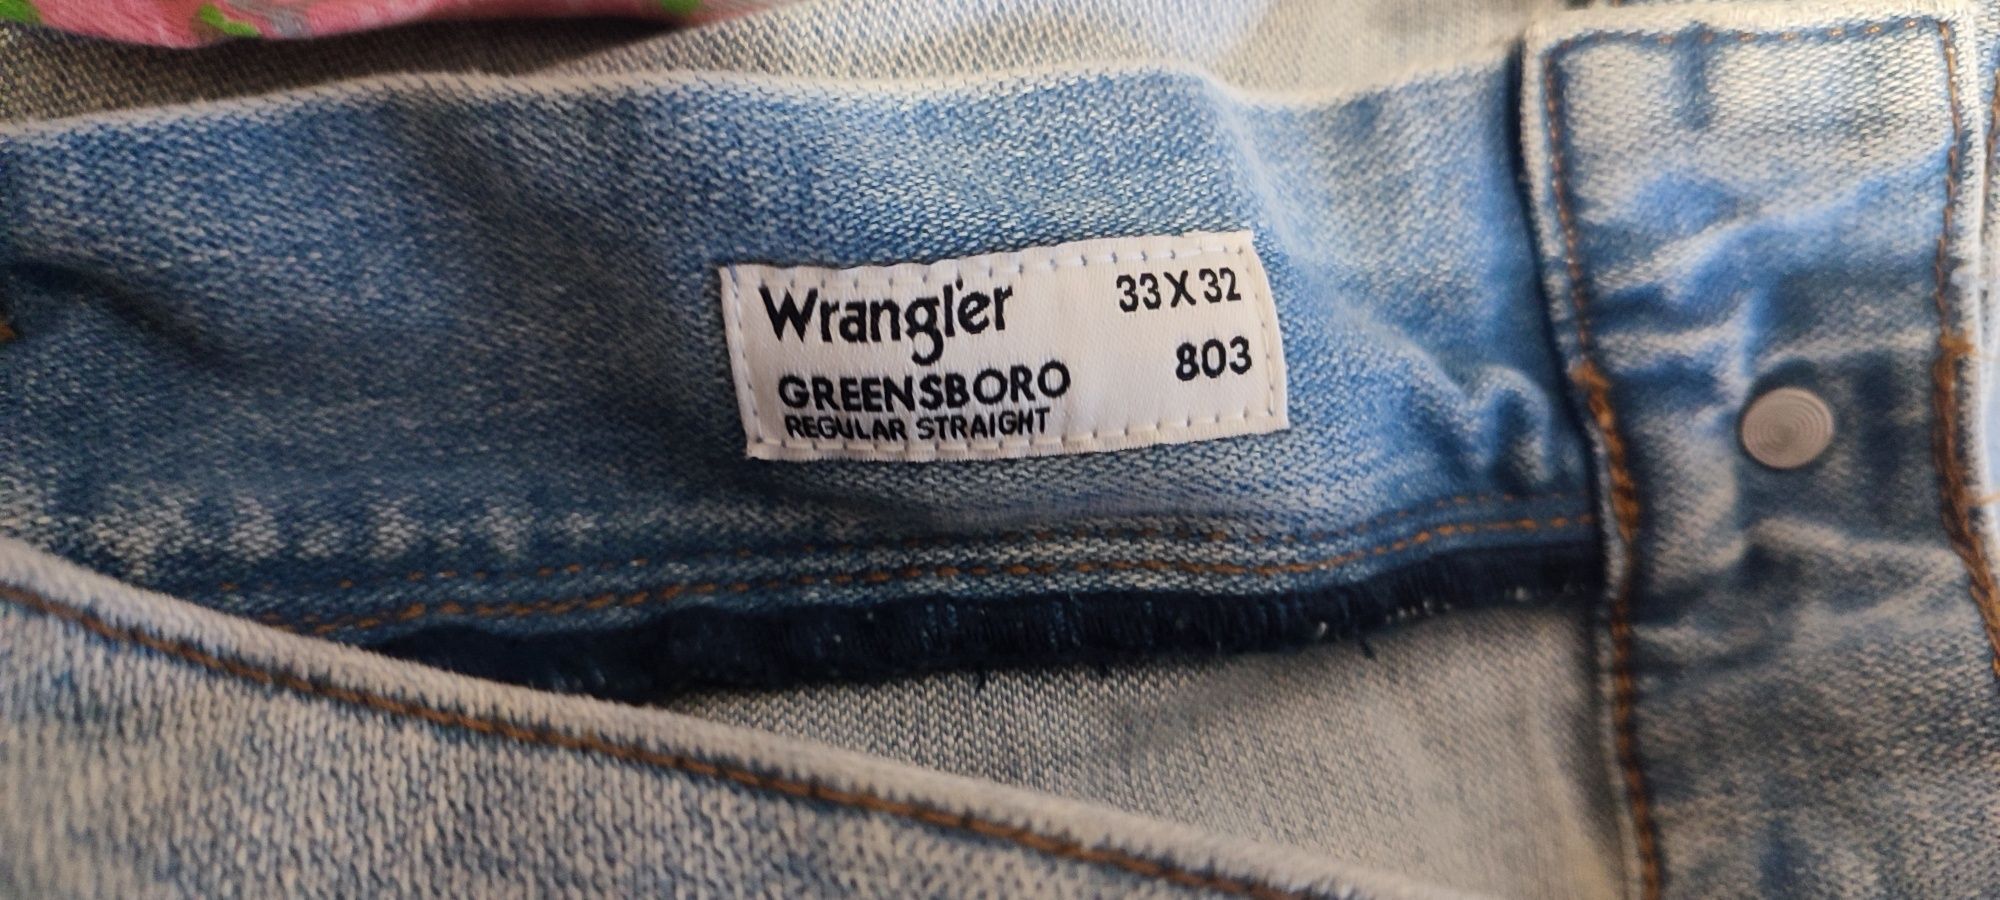 Spodnie Wrangler Greensboro w33 l32 w 33 l 32 nowe